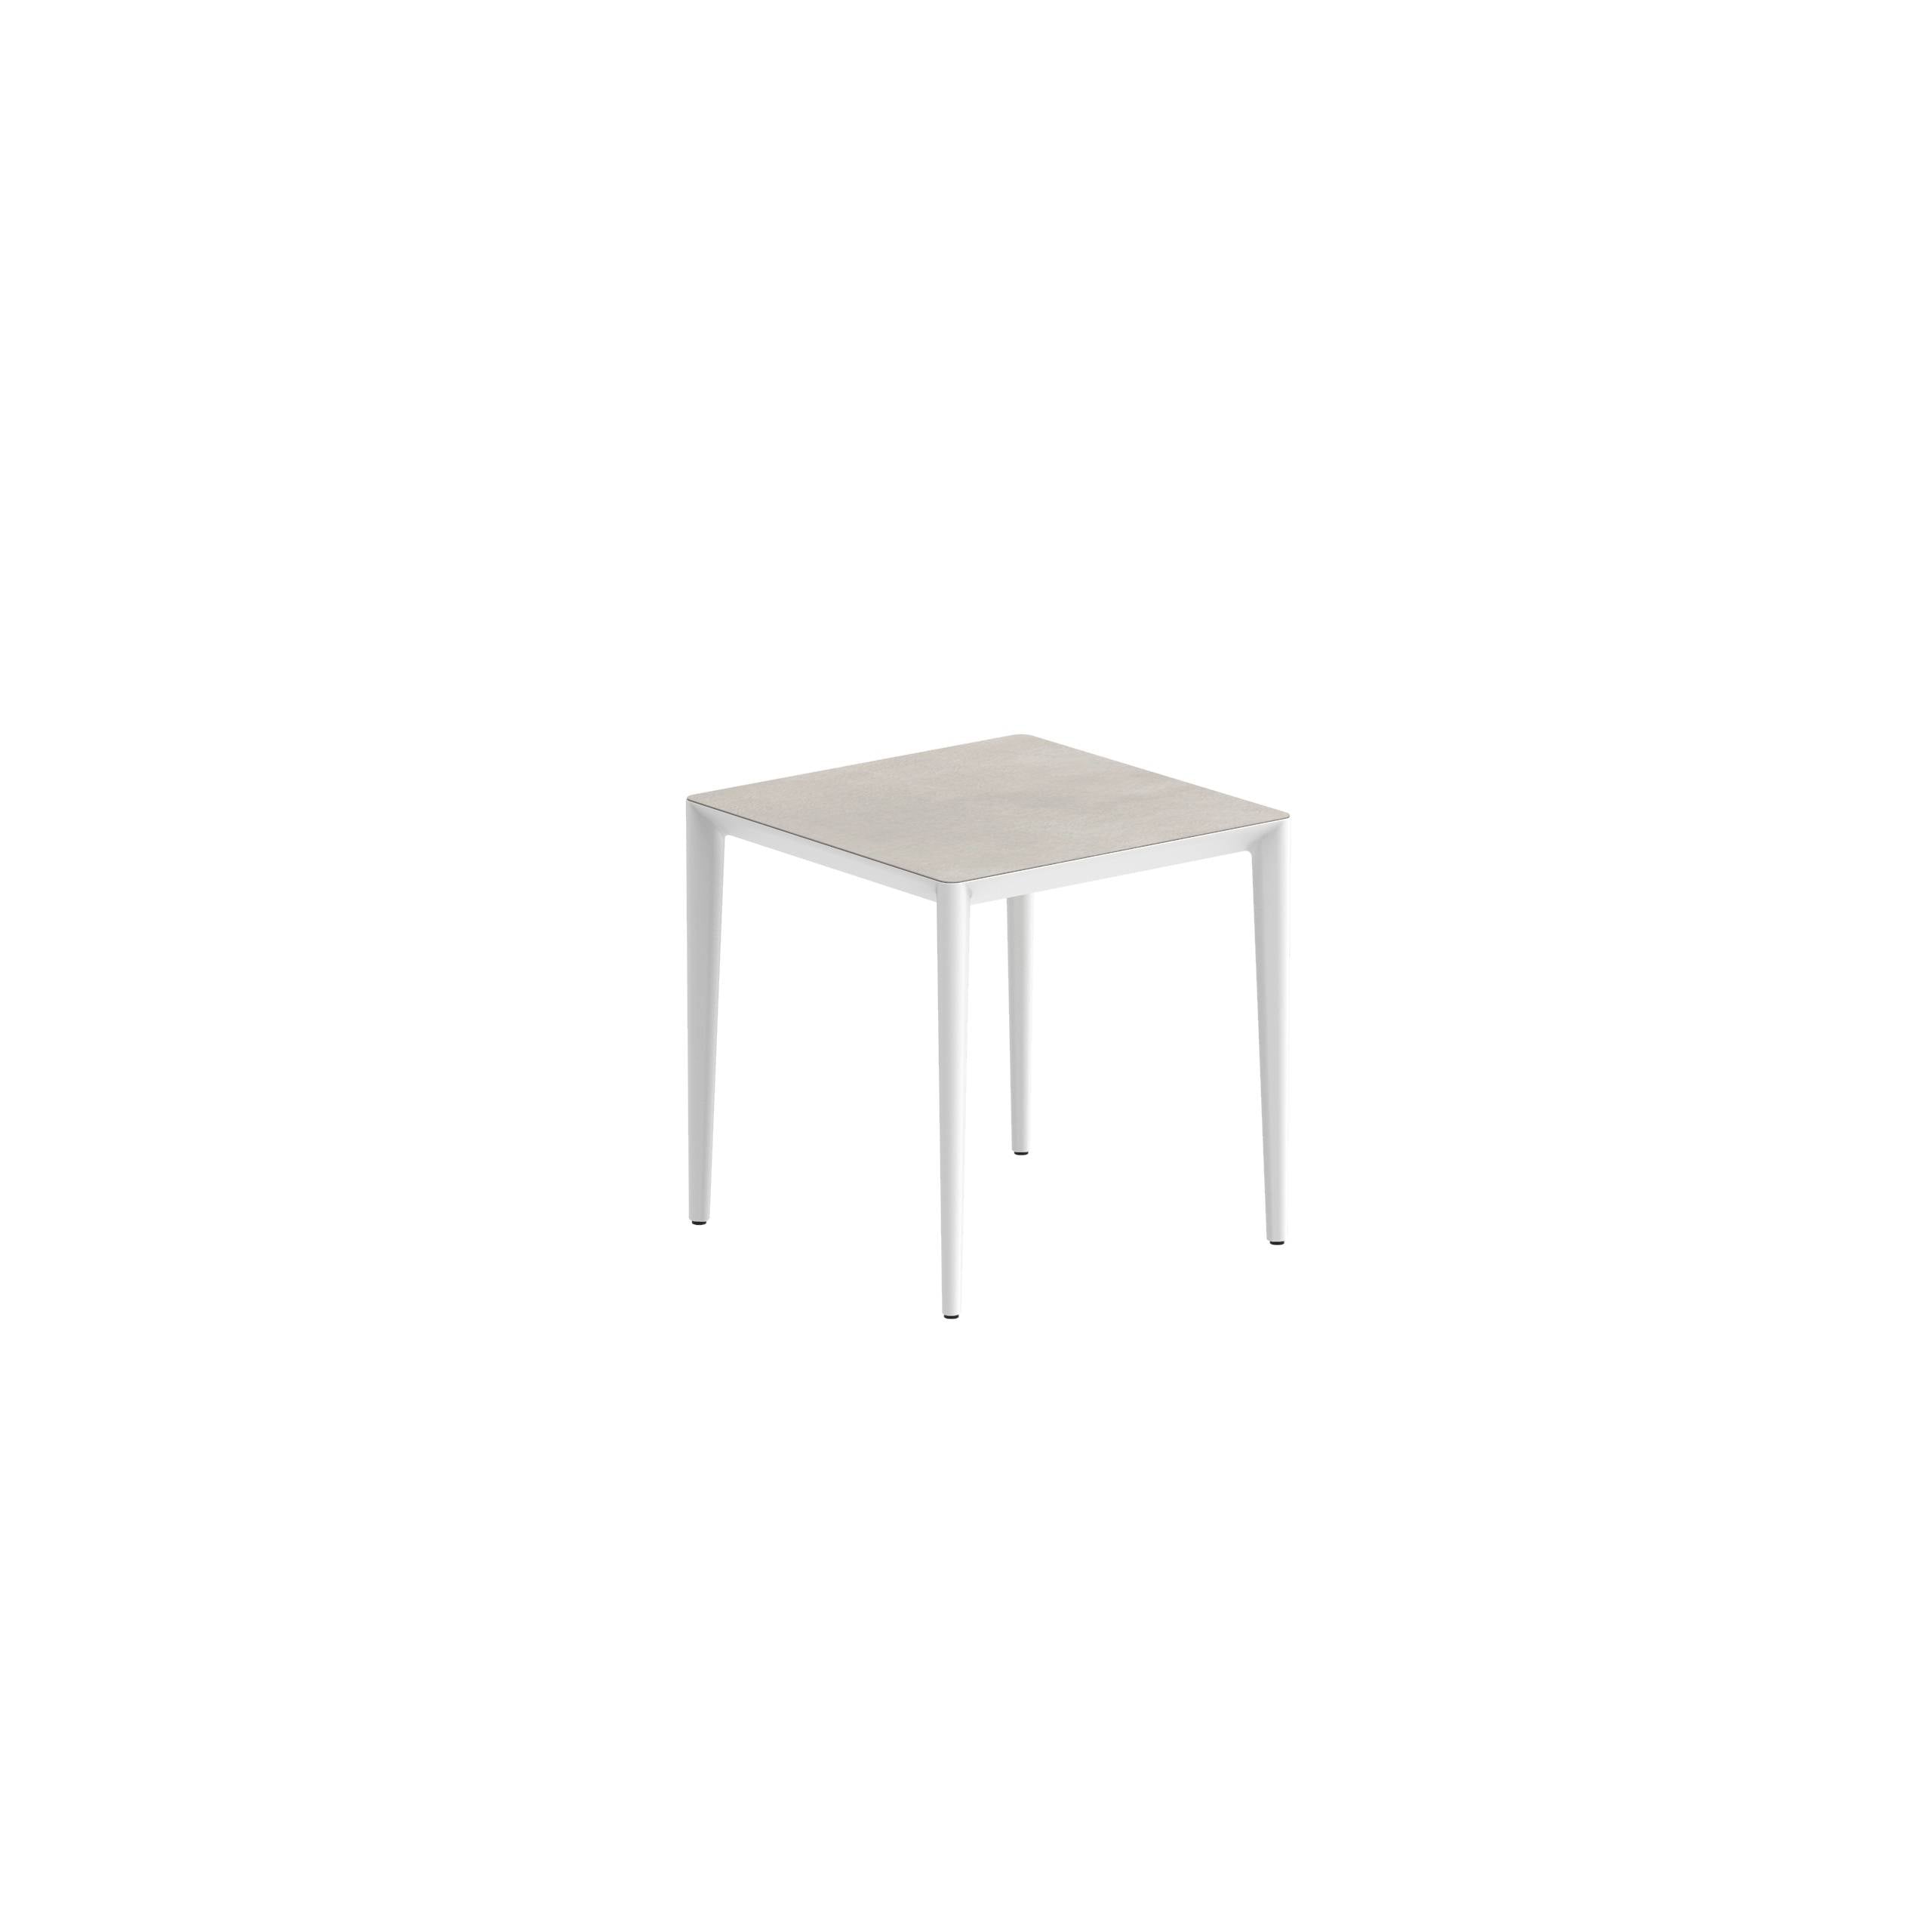 U-Nite Table 74x74cm White With Ceramic Tabletop In Bianco Statuario